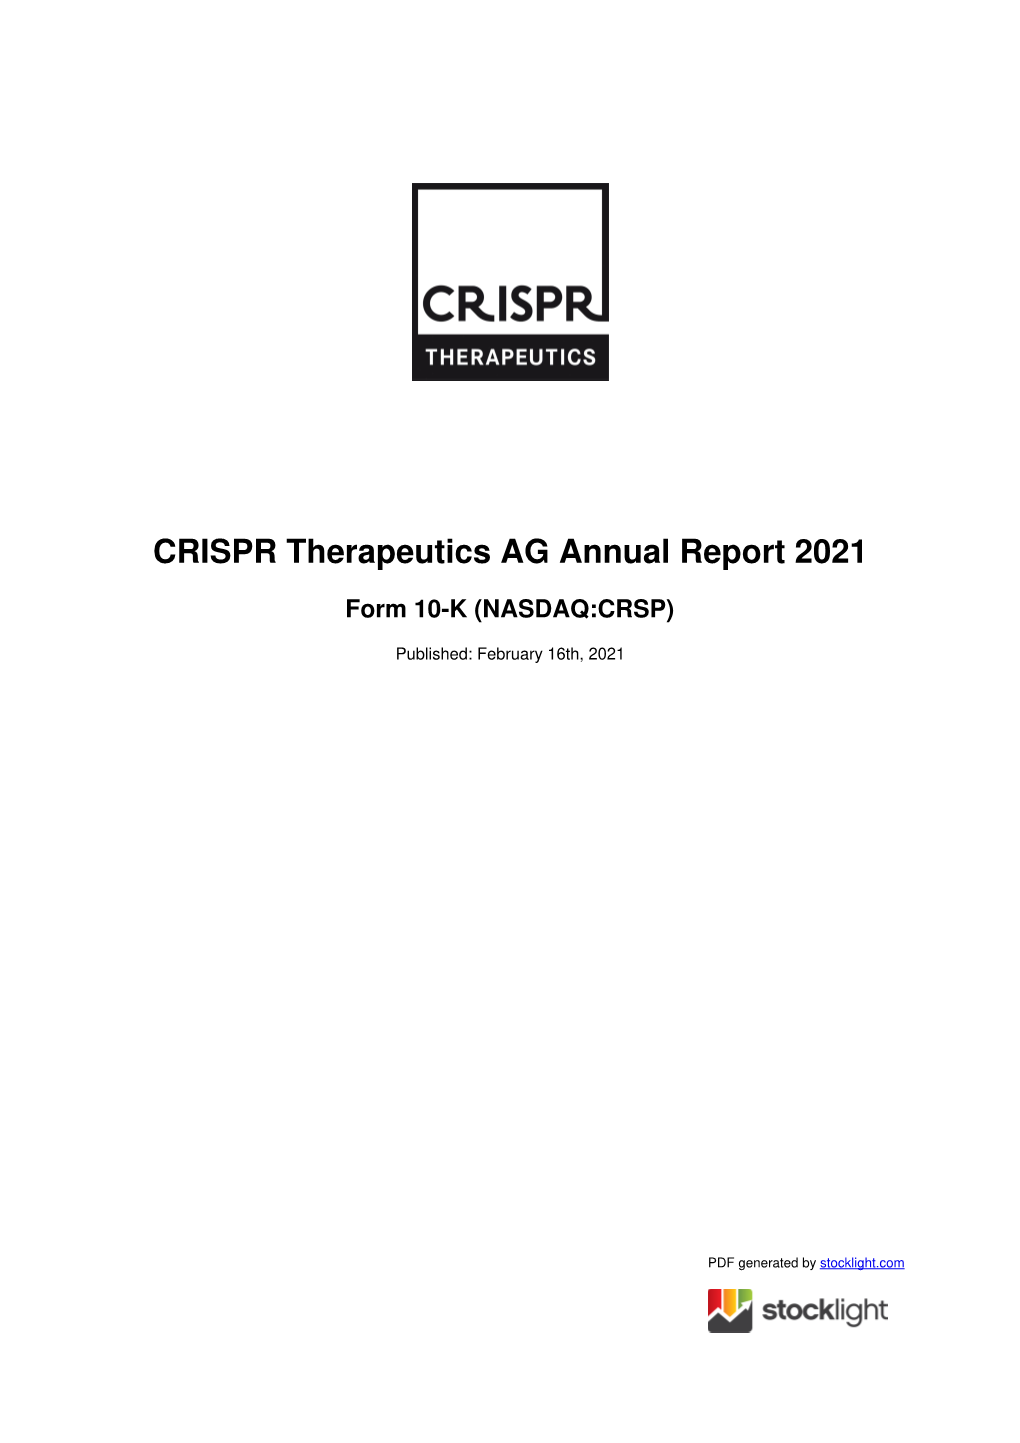 CRISPR Therapeutics AG Annual Report 2021